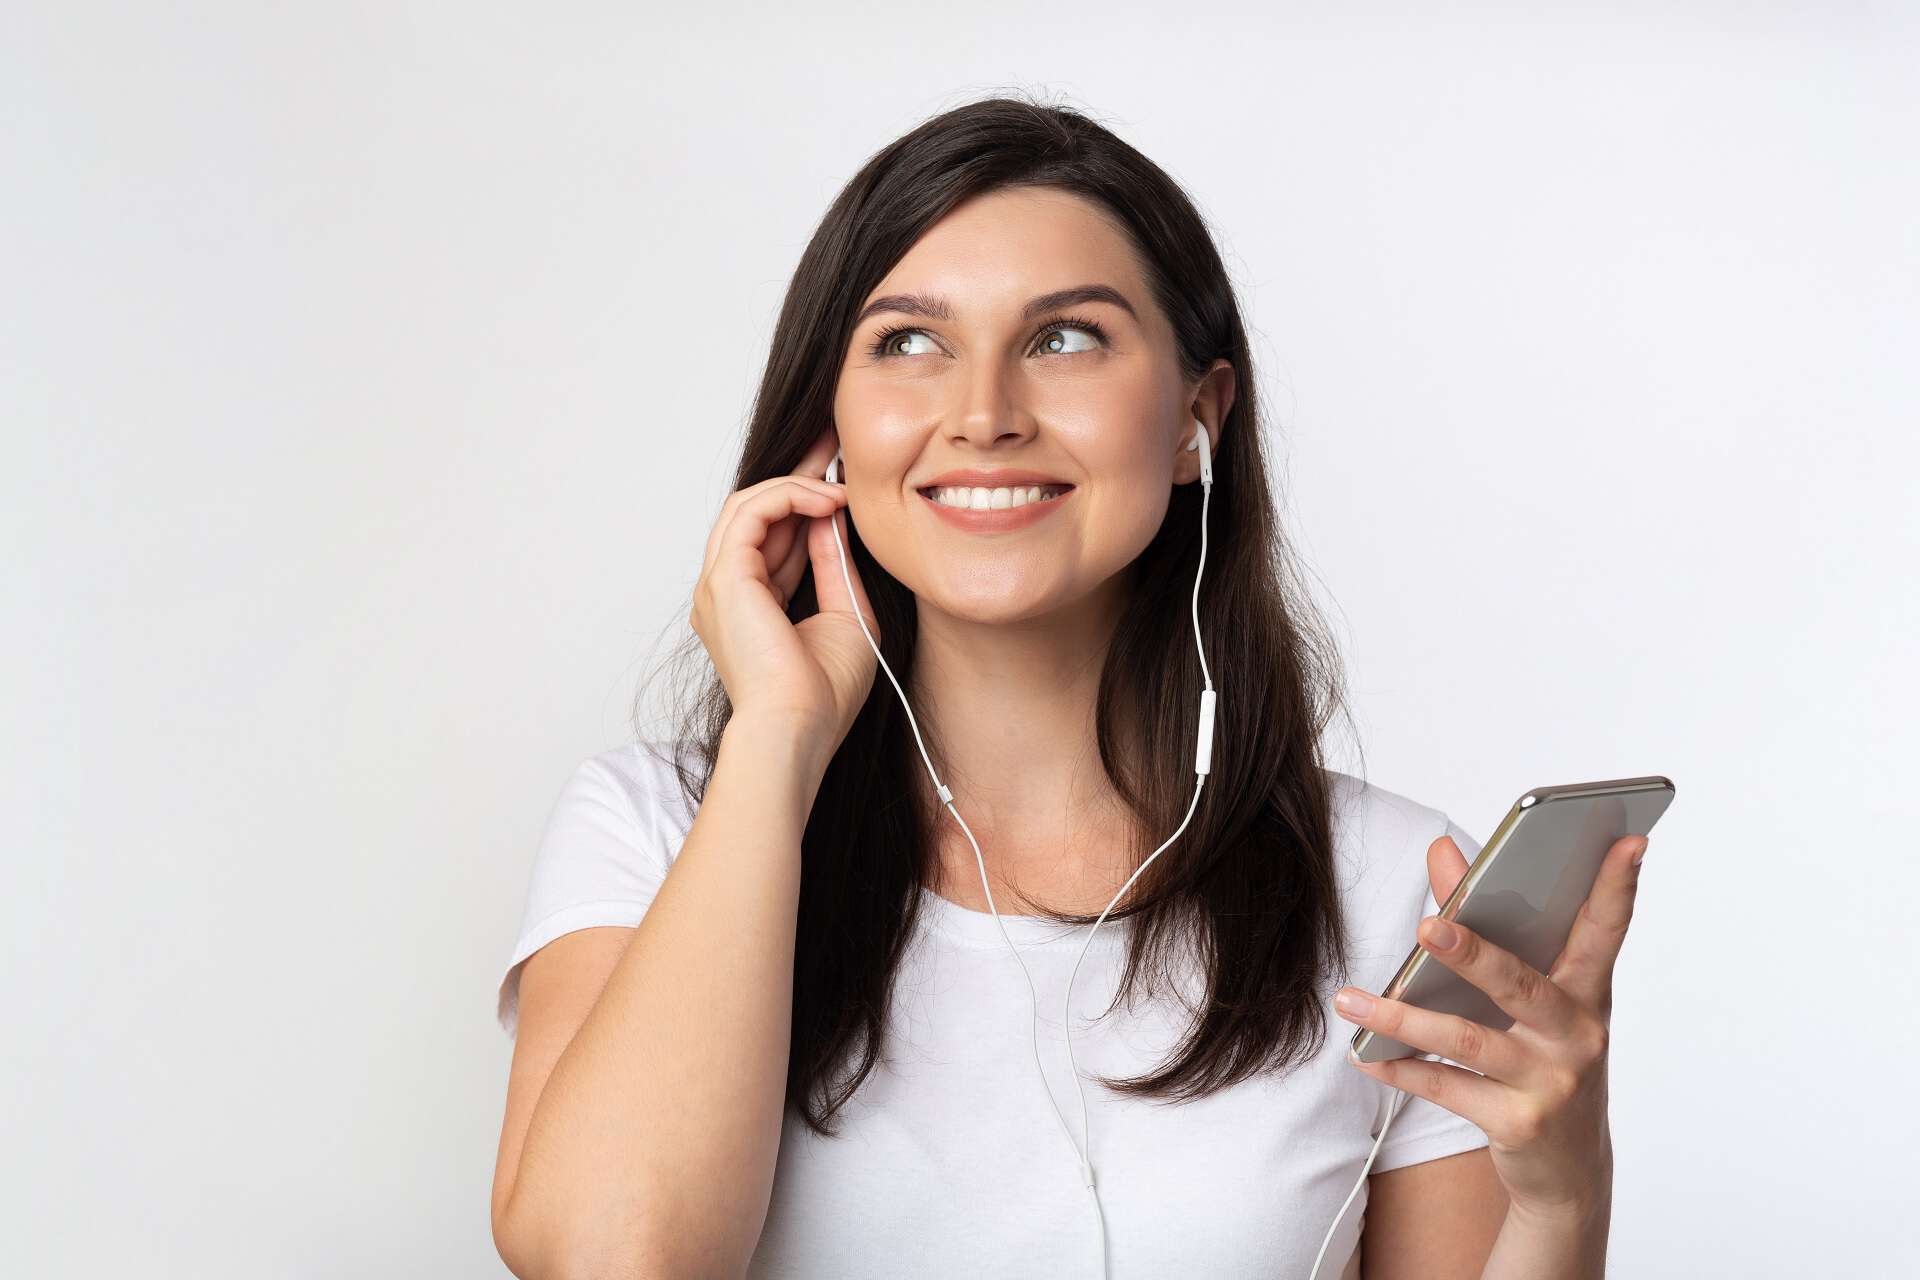 junge Frau hört Podcast auf einem Handy,
VBG-Podcast, Hör dich sicher!